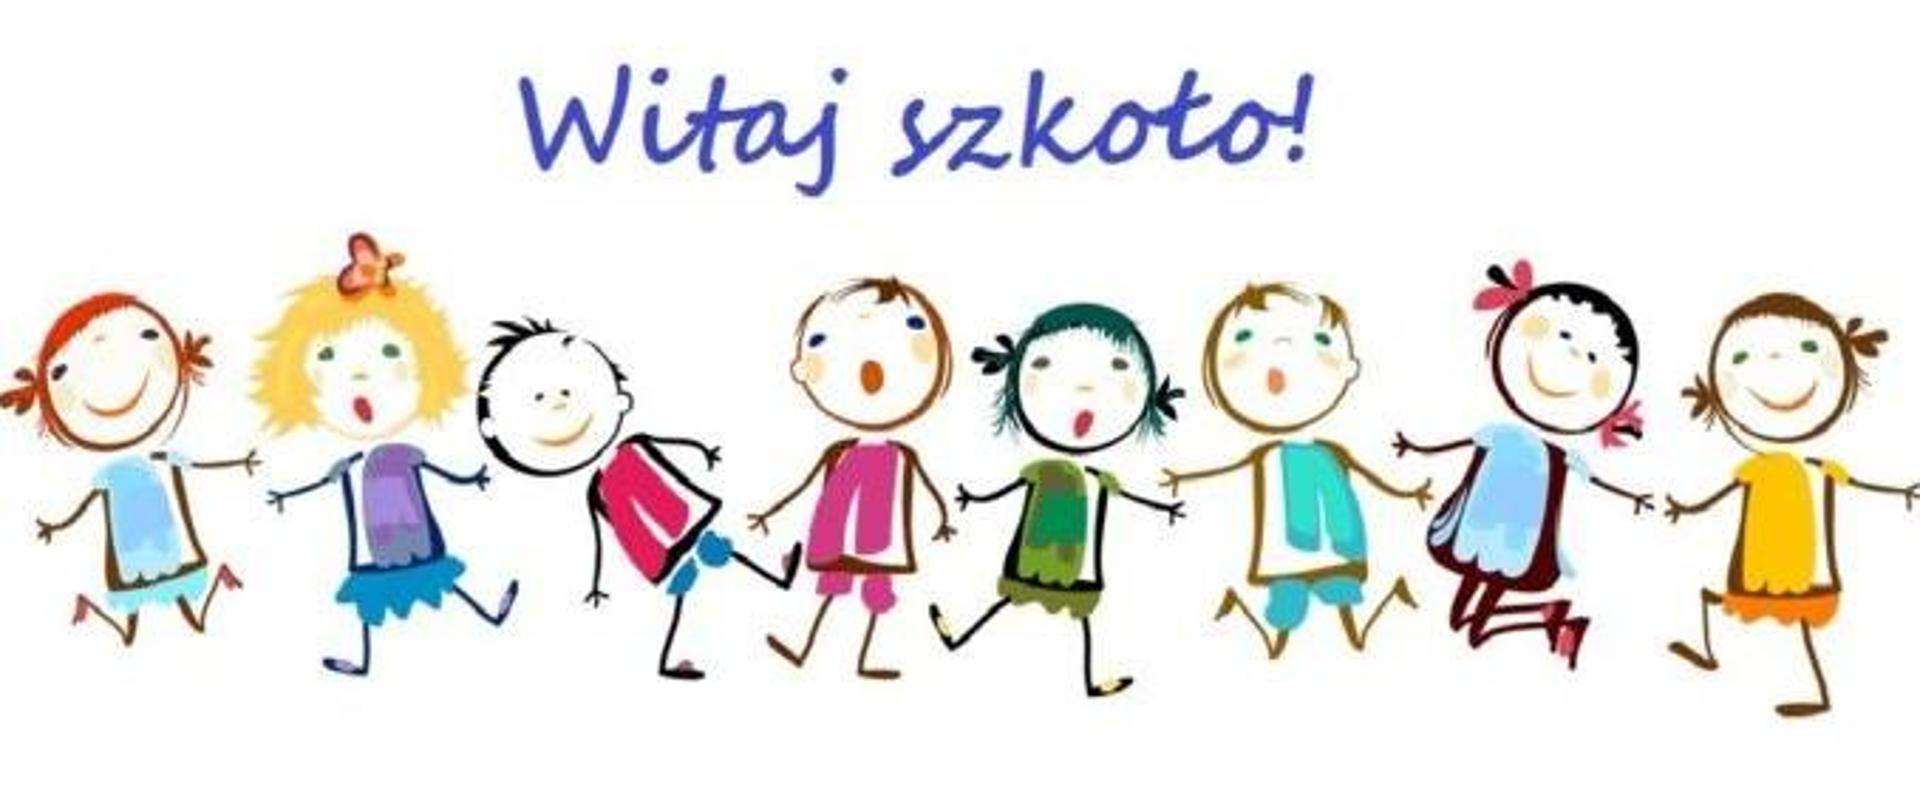 Plakat na białym tle,
na górze niebieski napis "Witaj szkoło !"
Pod spodem rysunek przedstawiający ośmioro dzieci trzymających się za ręce 